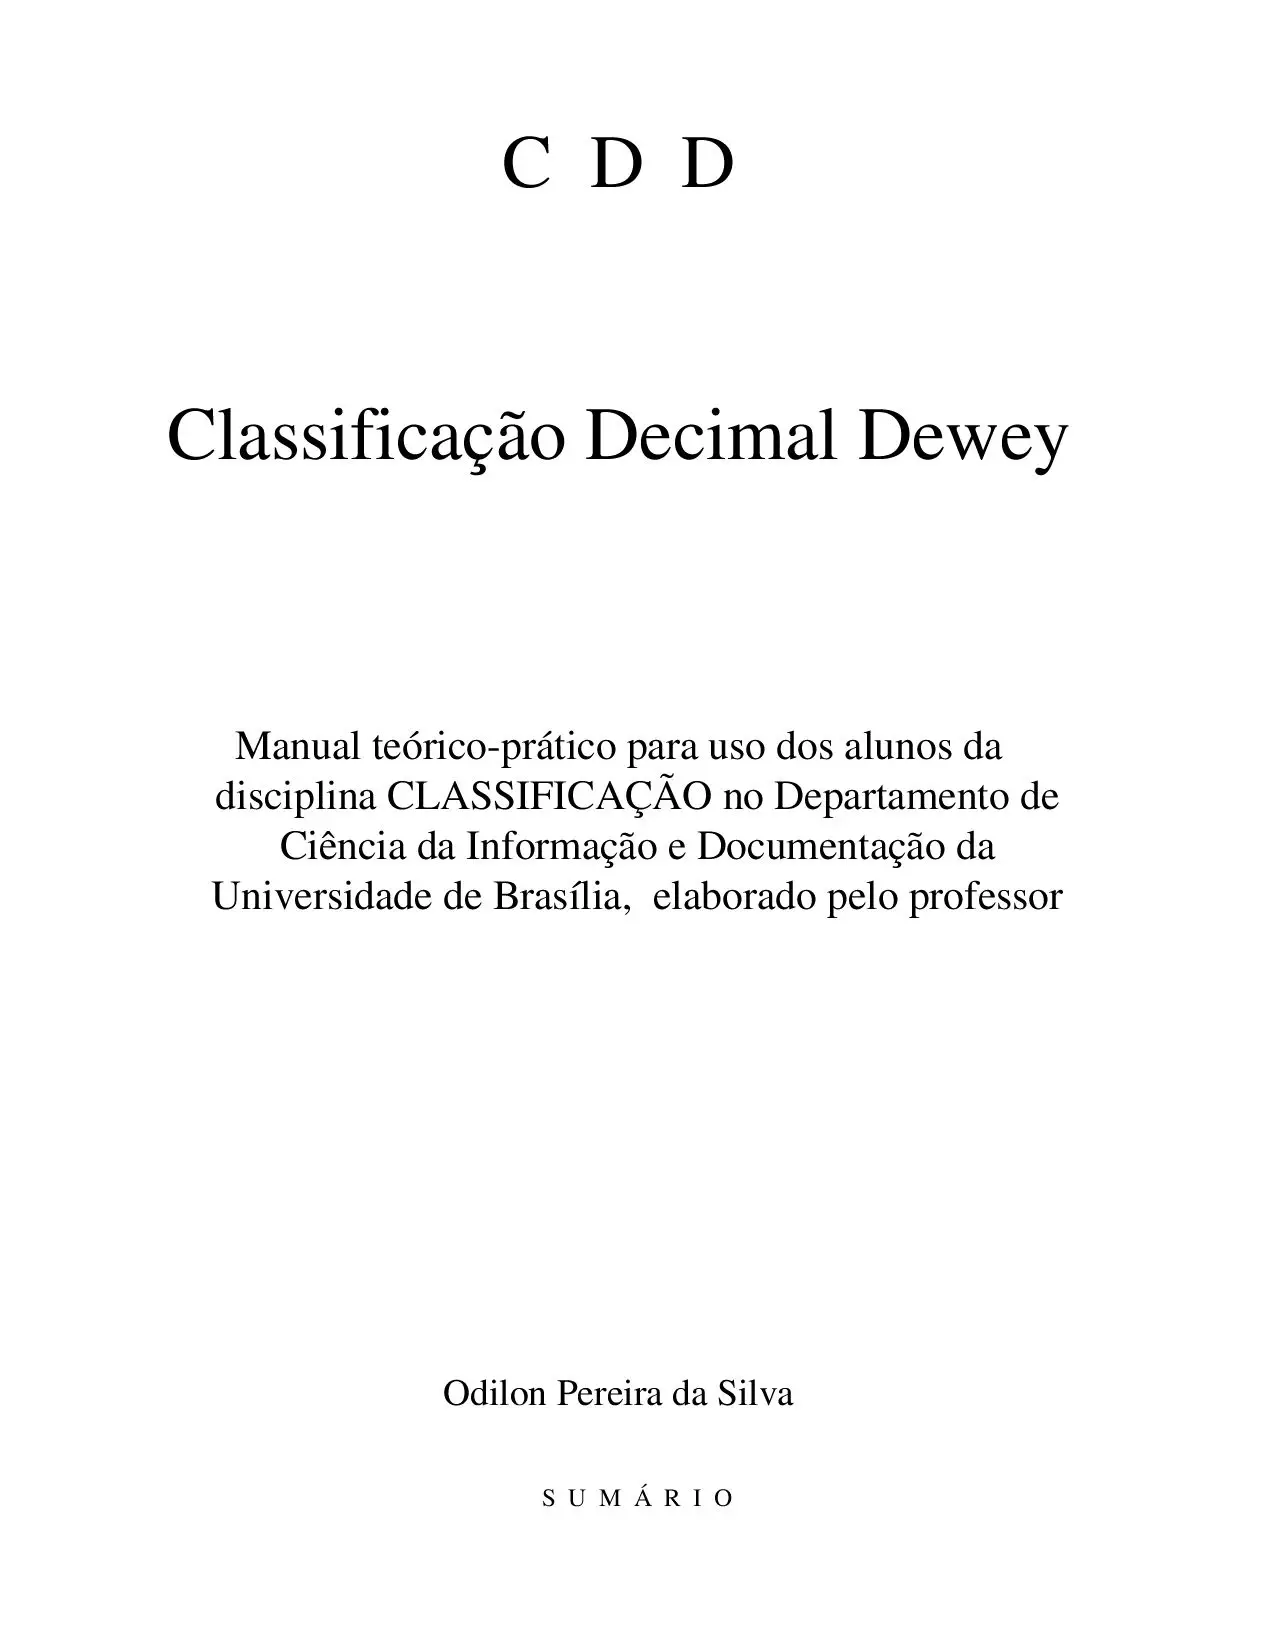 Classificação Decimal De Dewey